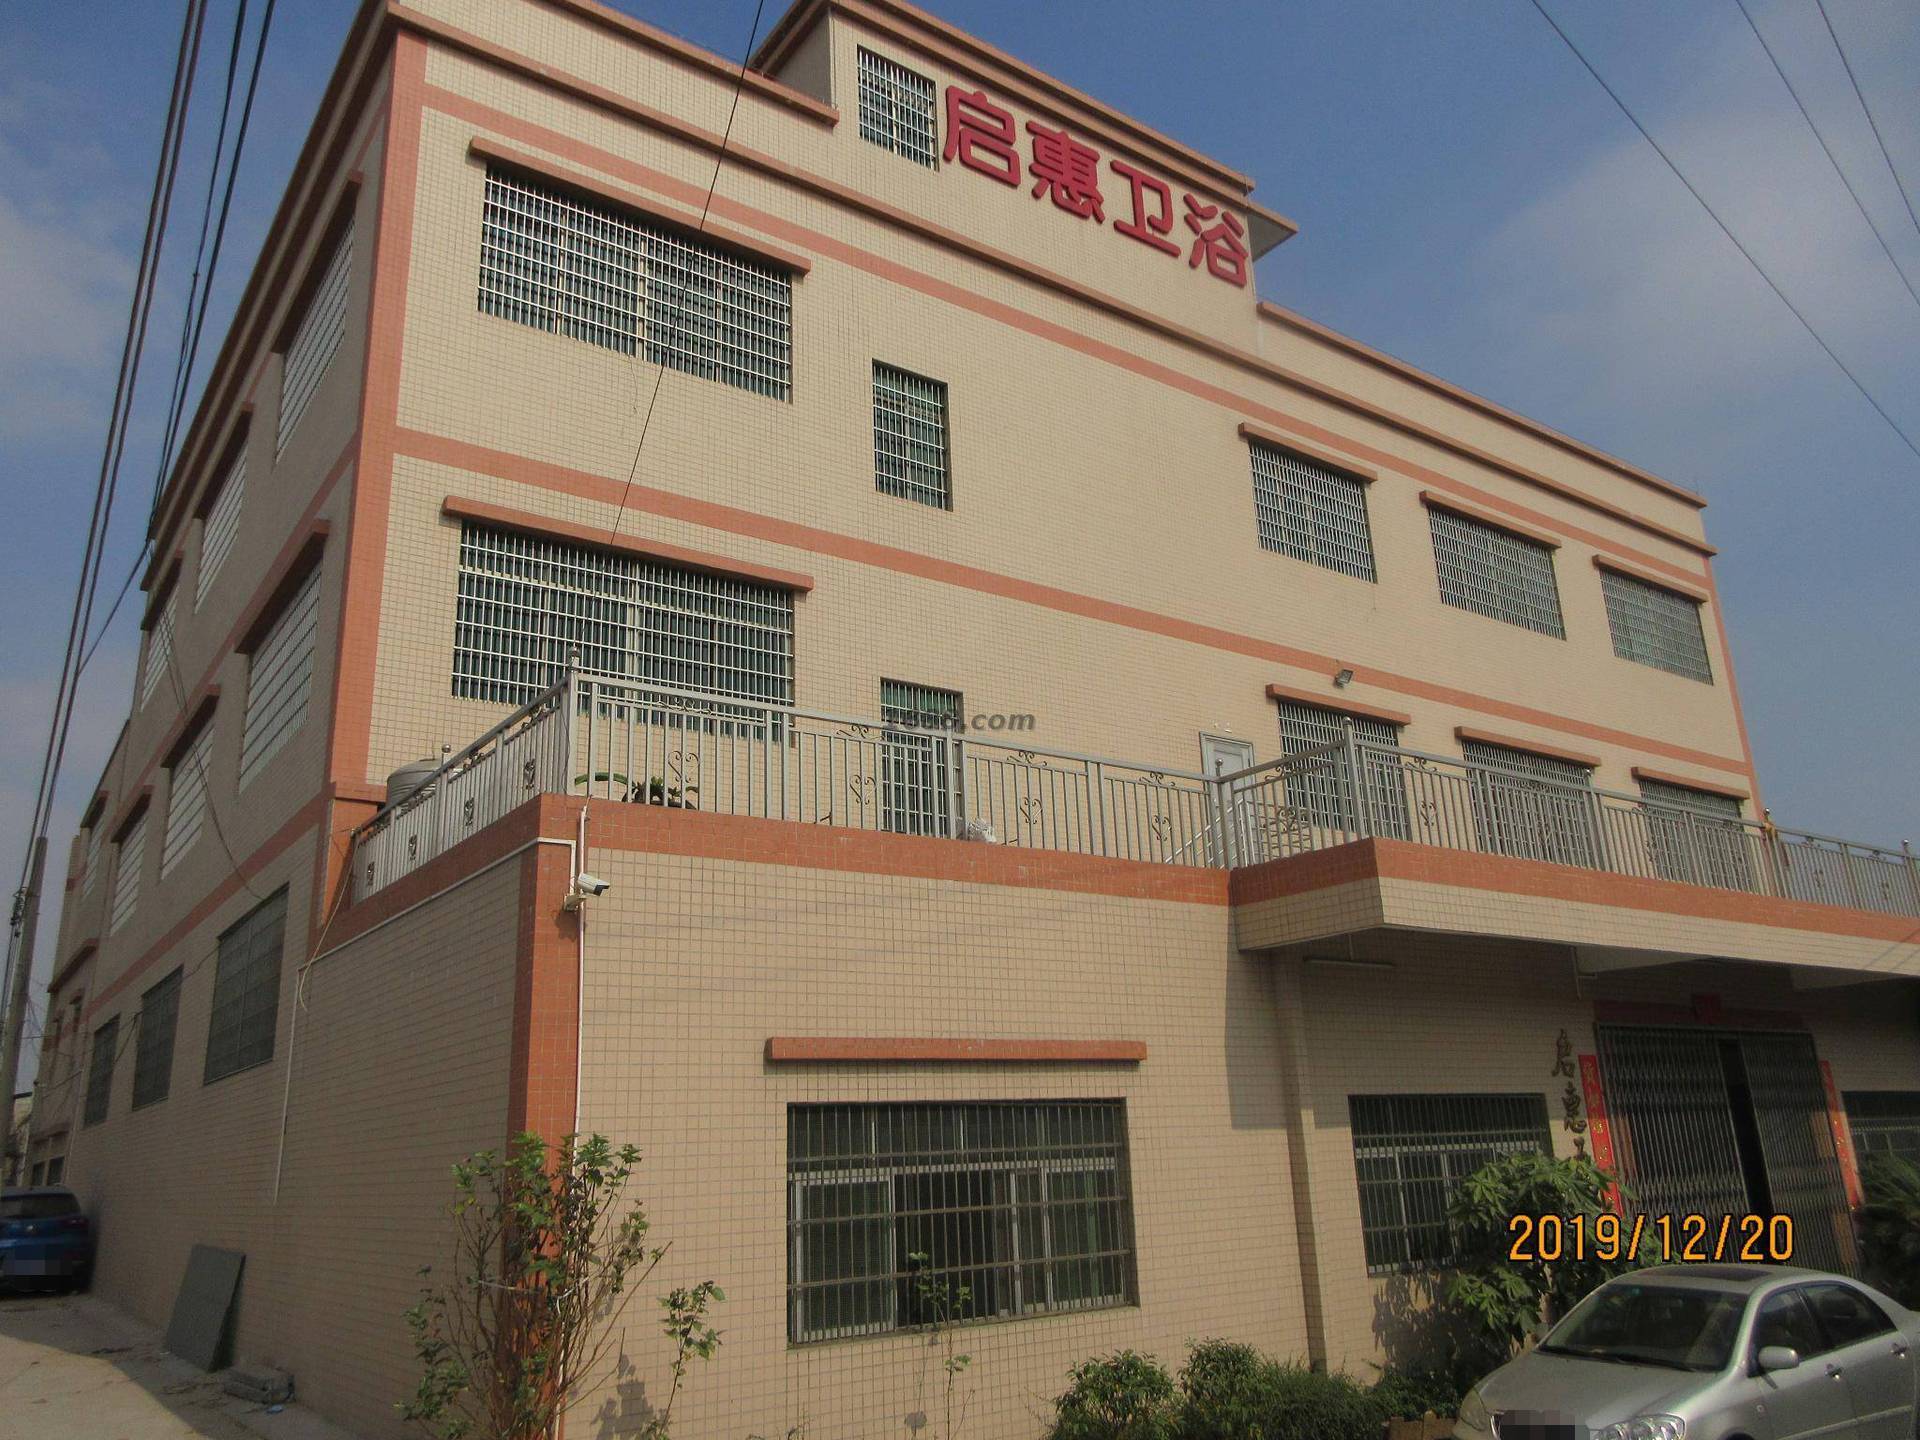     Kaiping Shuikou Qihui Sanitary Equipment Factory